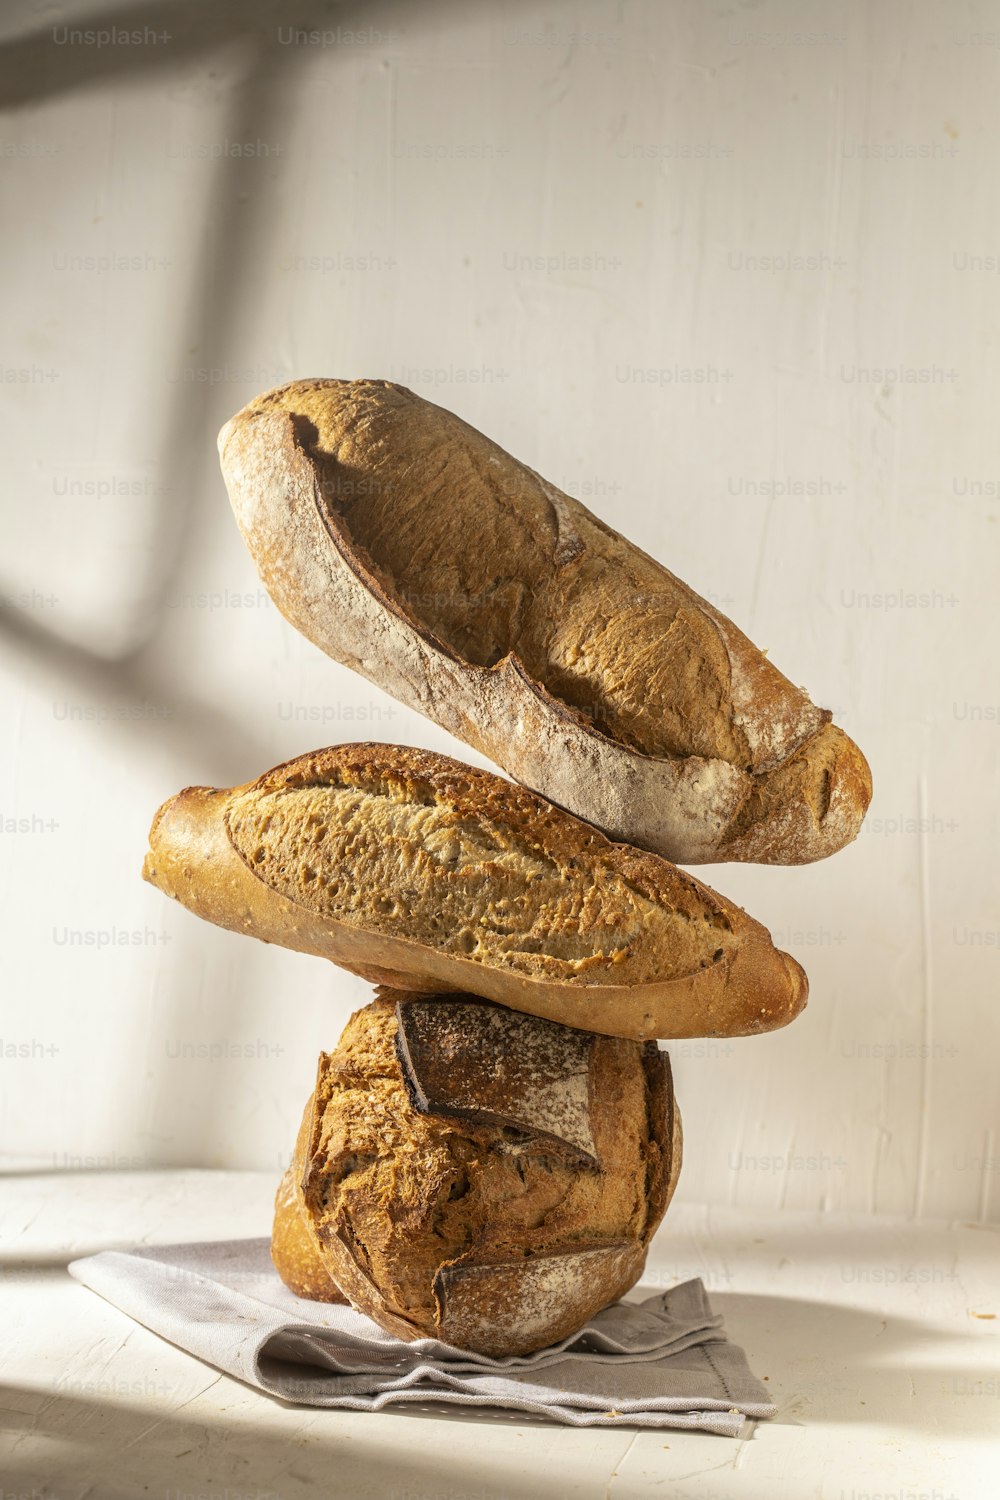 세 개의 빵 덩어리가 서로 겹쳐져 있습니다.